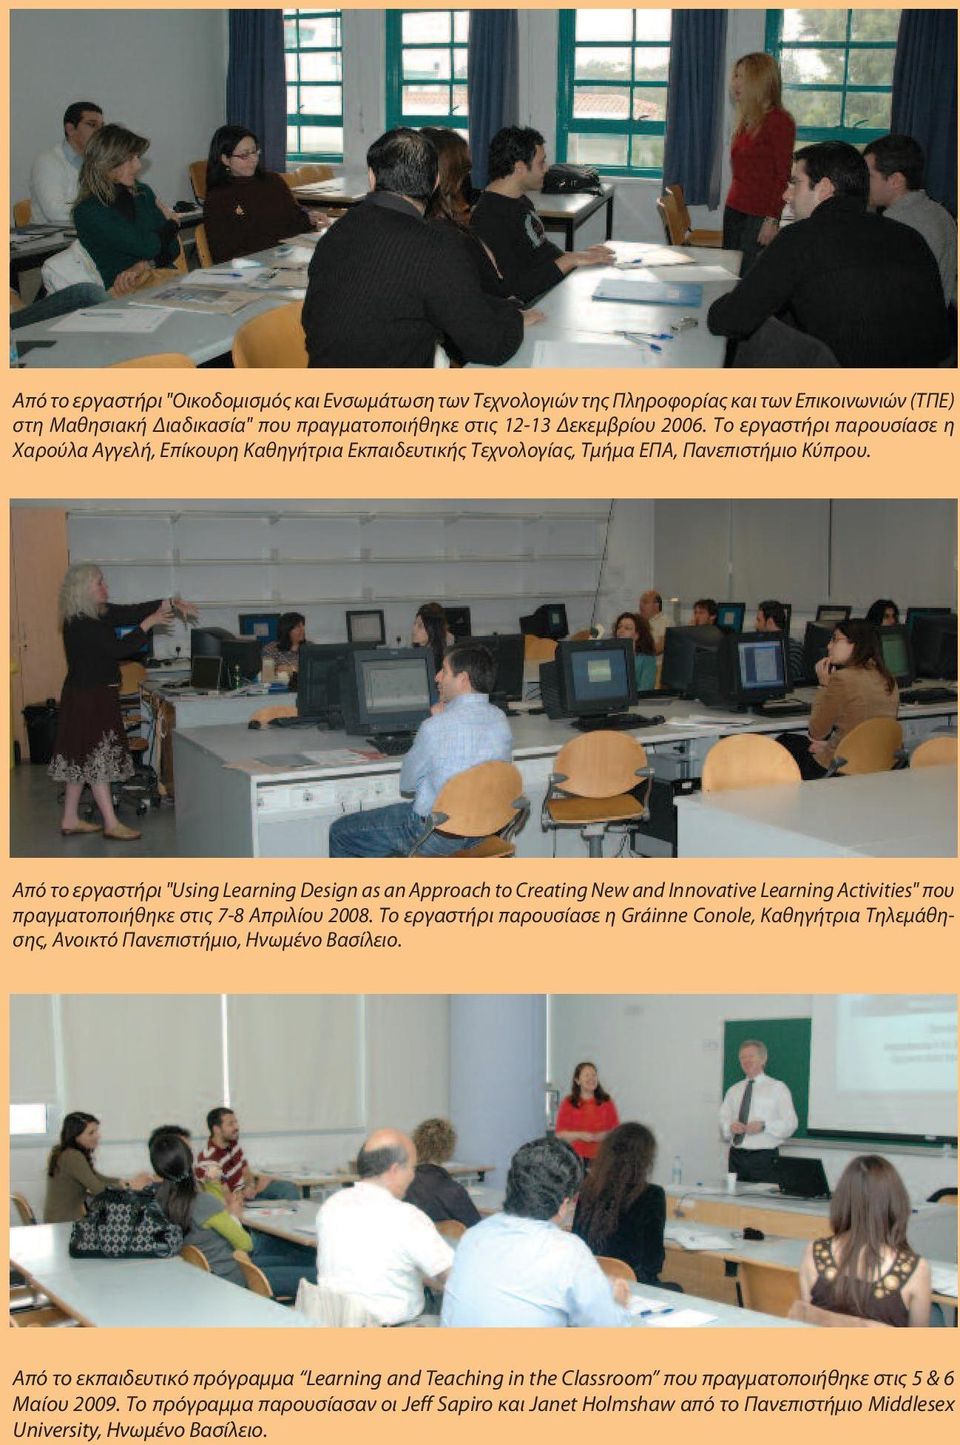 Από το εργαστήρι "Using Learning Design as an Approach to Creating New and Innovative Learning Activities" που πραγματοποιήθηκε στις 7-8 Απριλίου 2008.